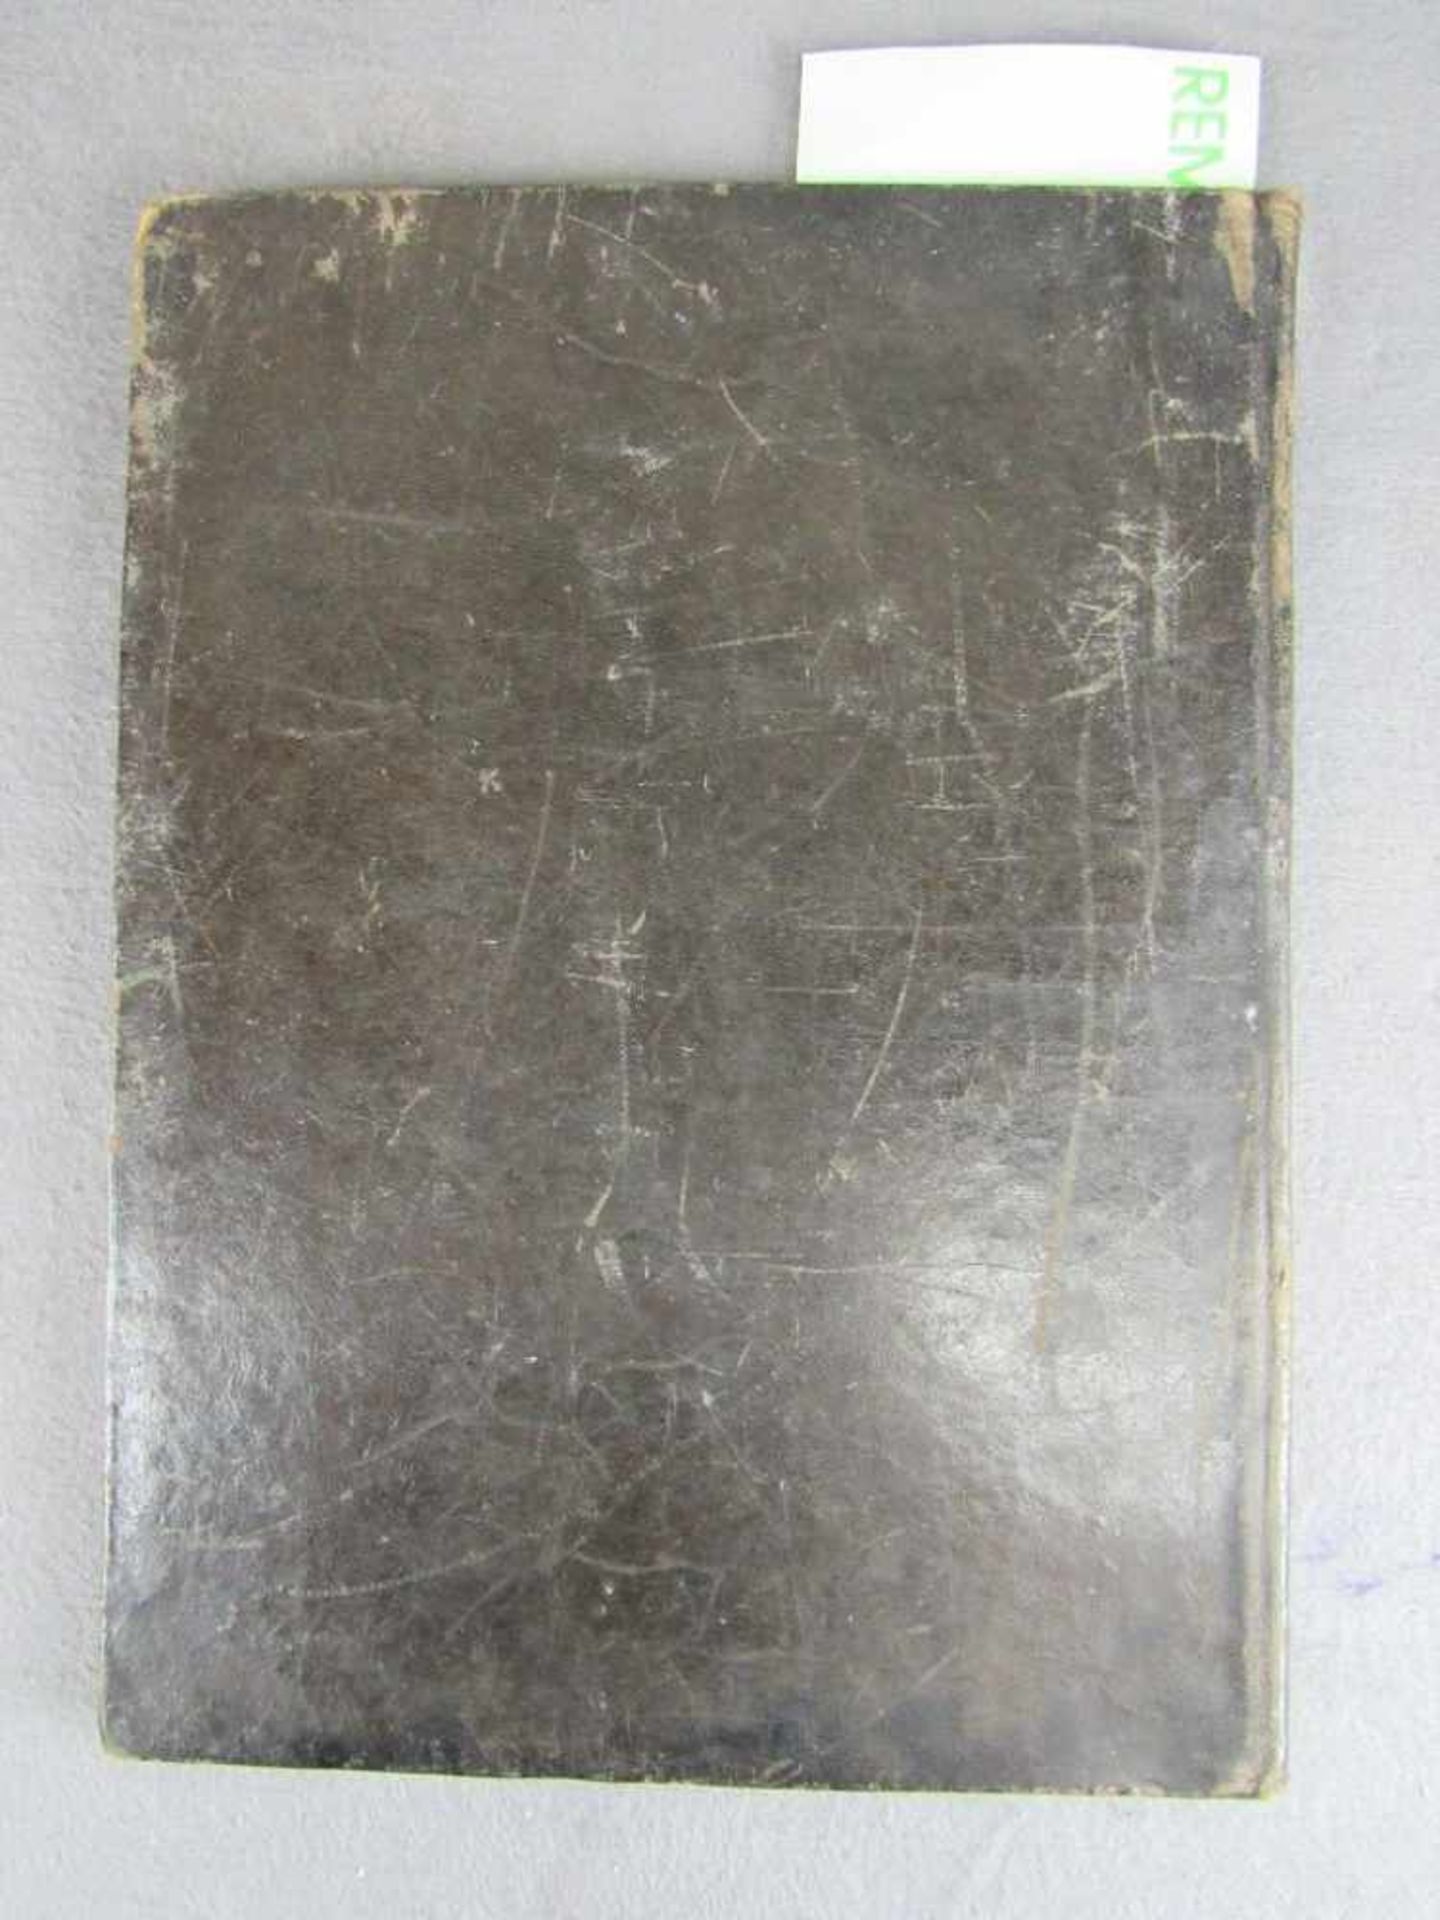 Antikes Buch Christlich in Leder gebundenes Pergament Latain Din A4- - -20.00 % buyer's premium on - Image 7 of 7